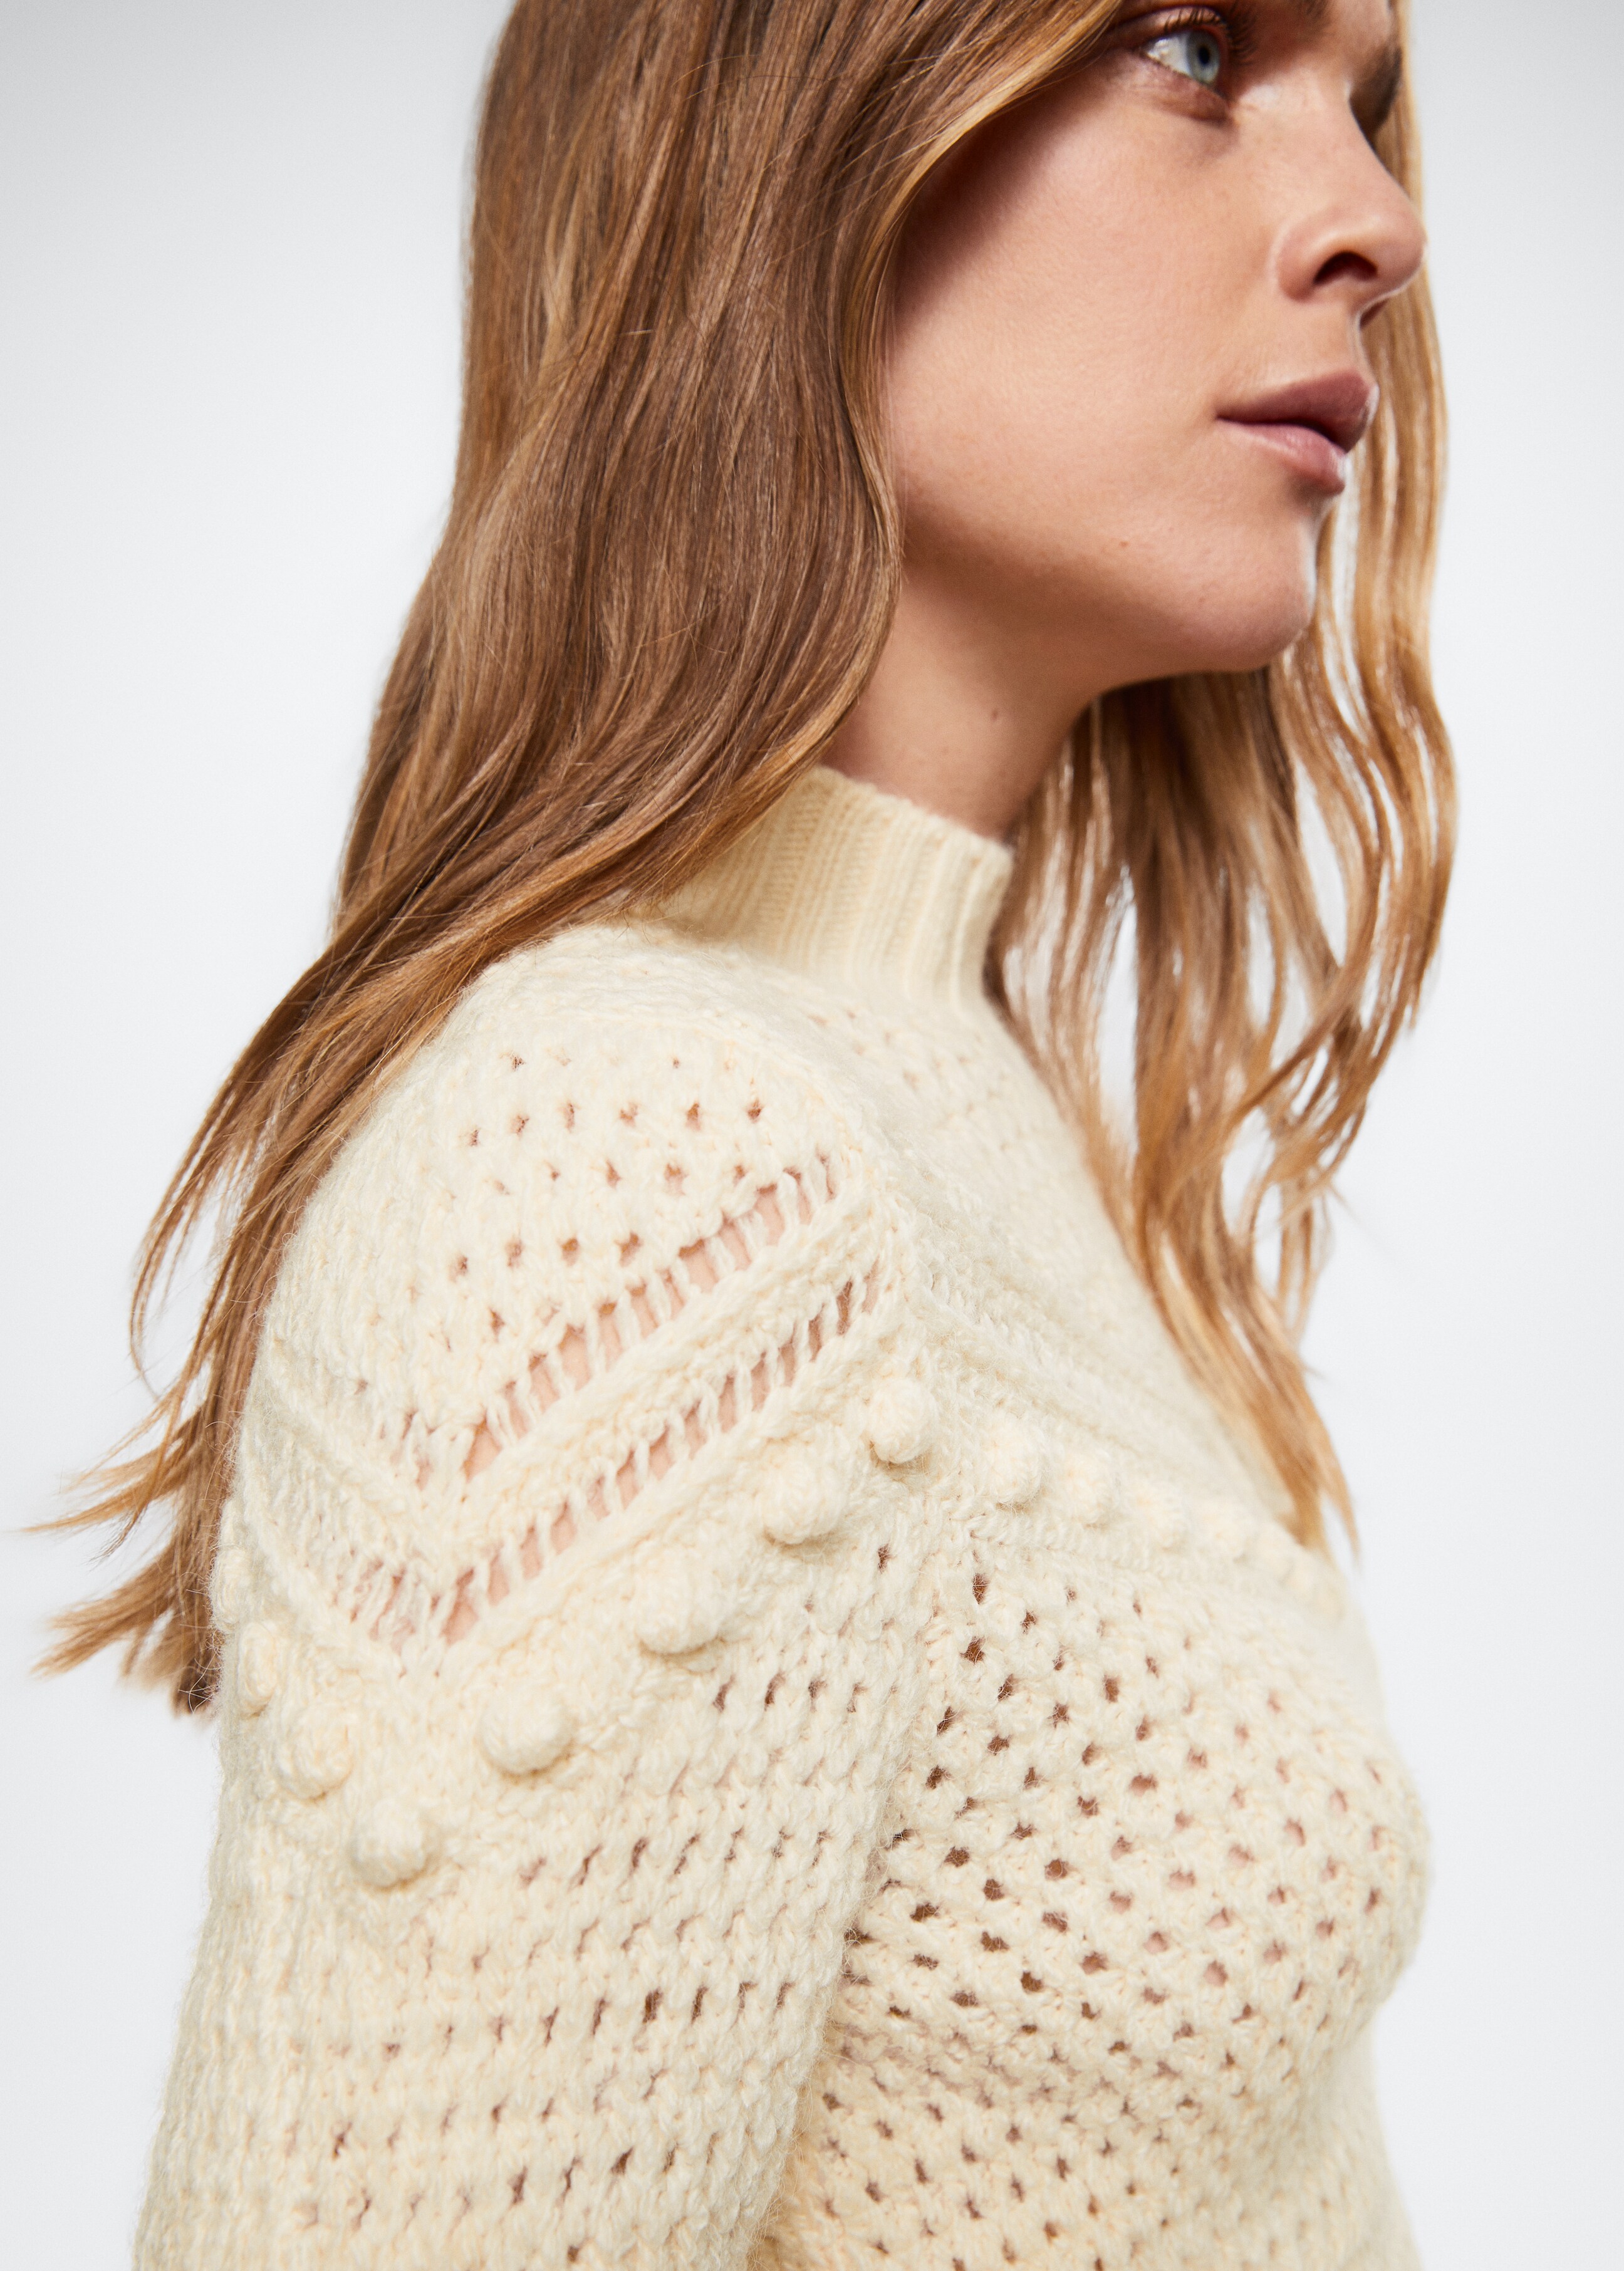 Openwork knit sweater